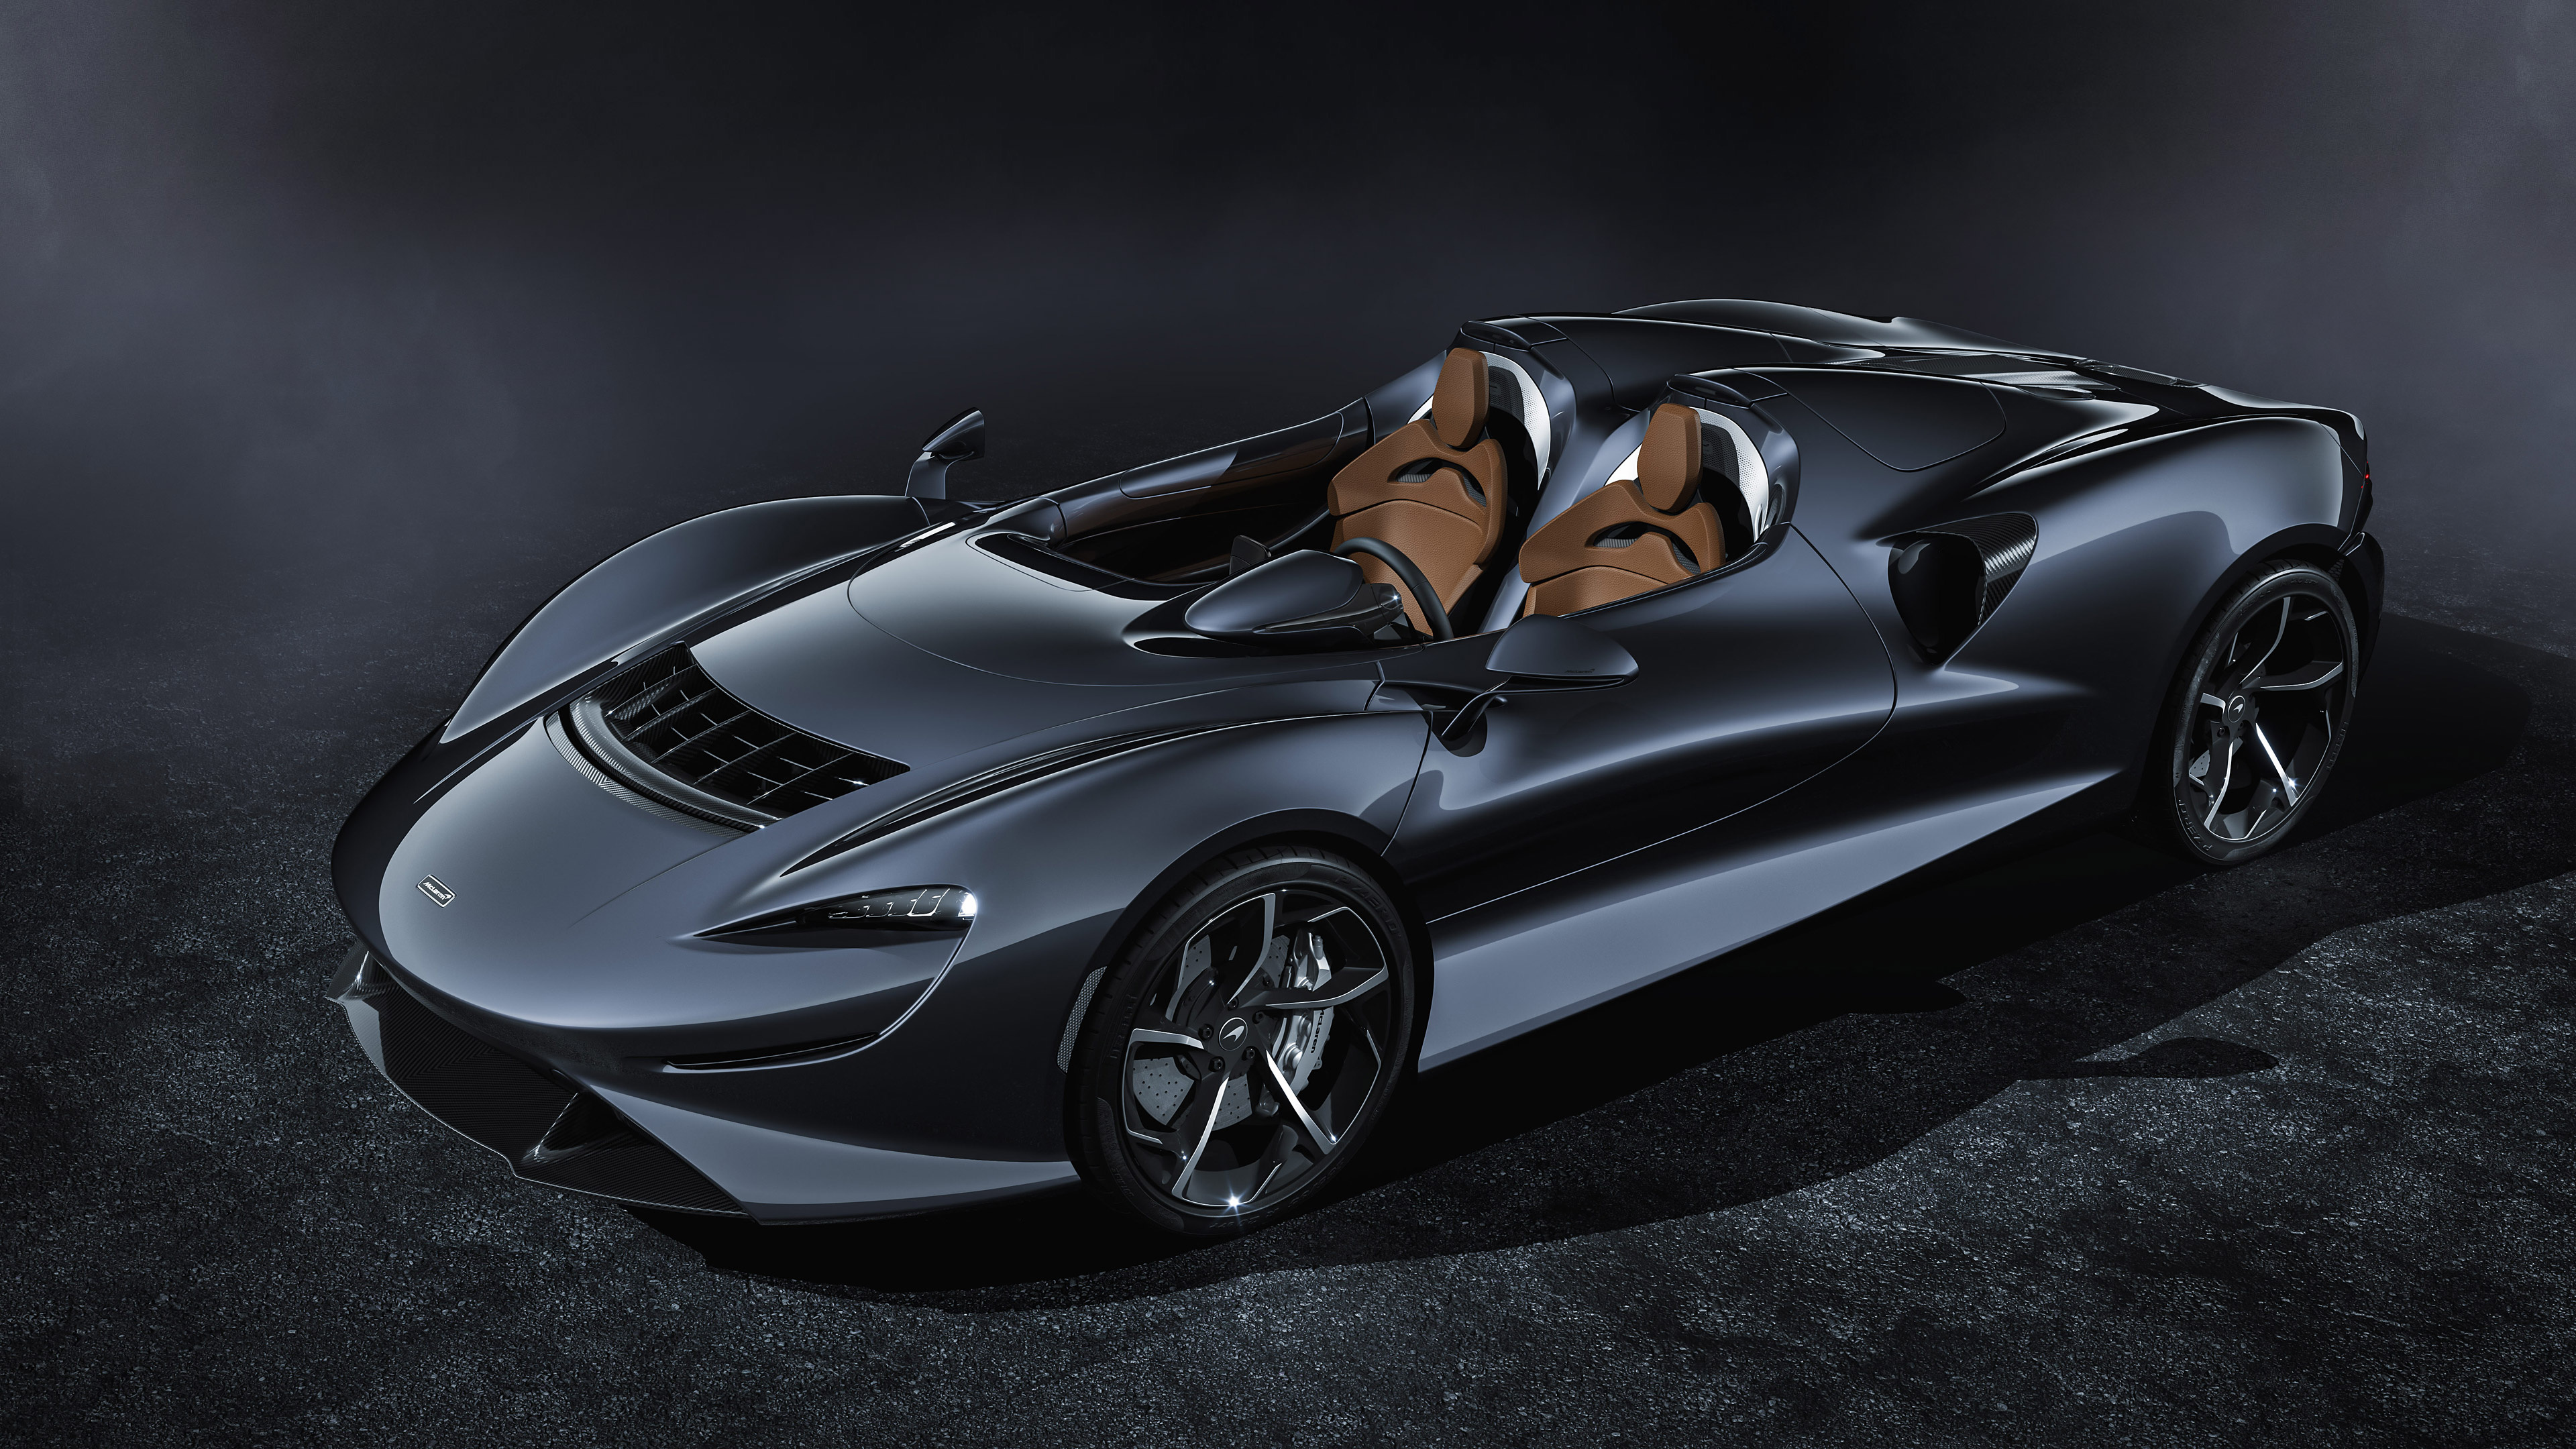 McLaren Elva, Exquisite vehicle, Car wallpaper, HD quality, 3840x2160 4K Desktop